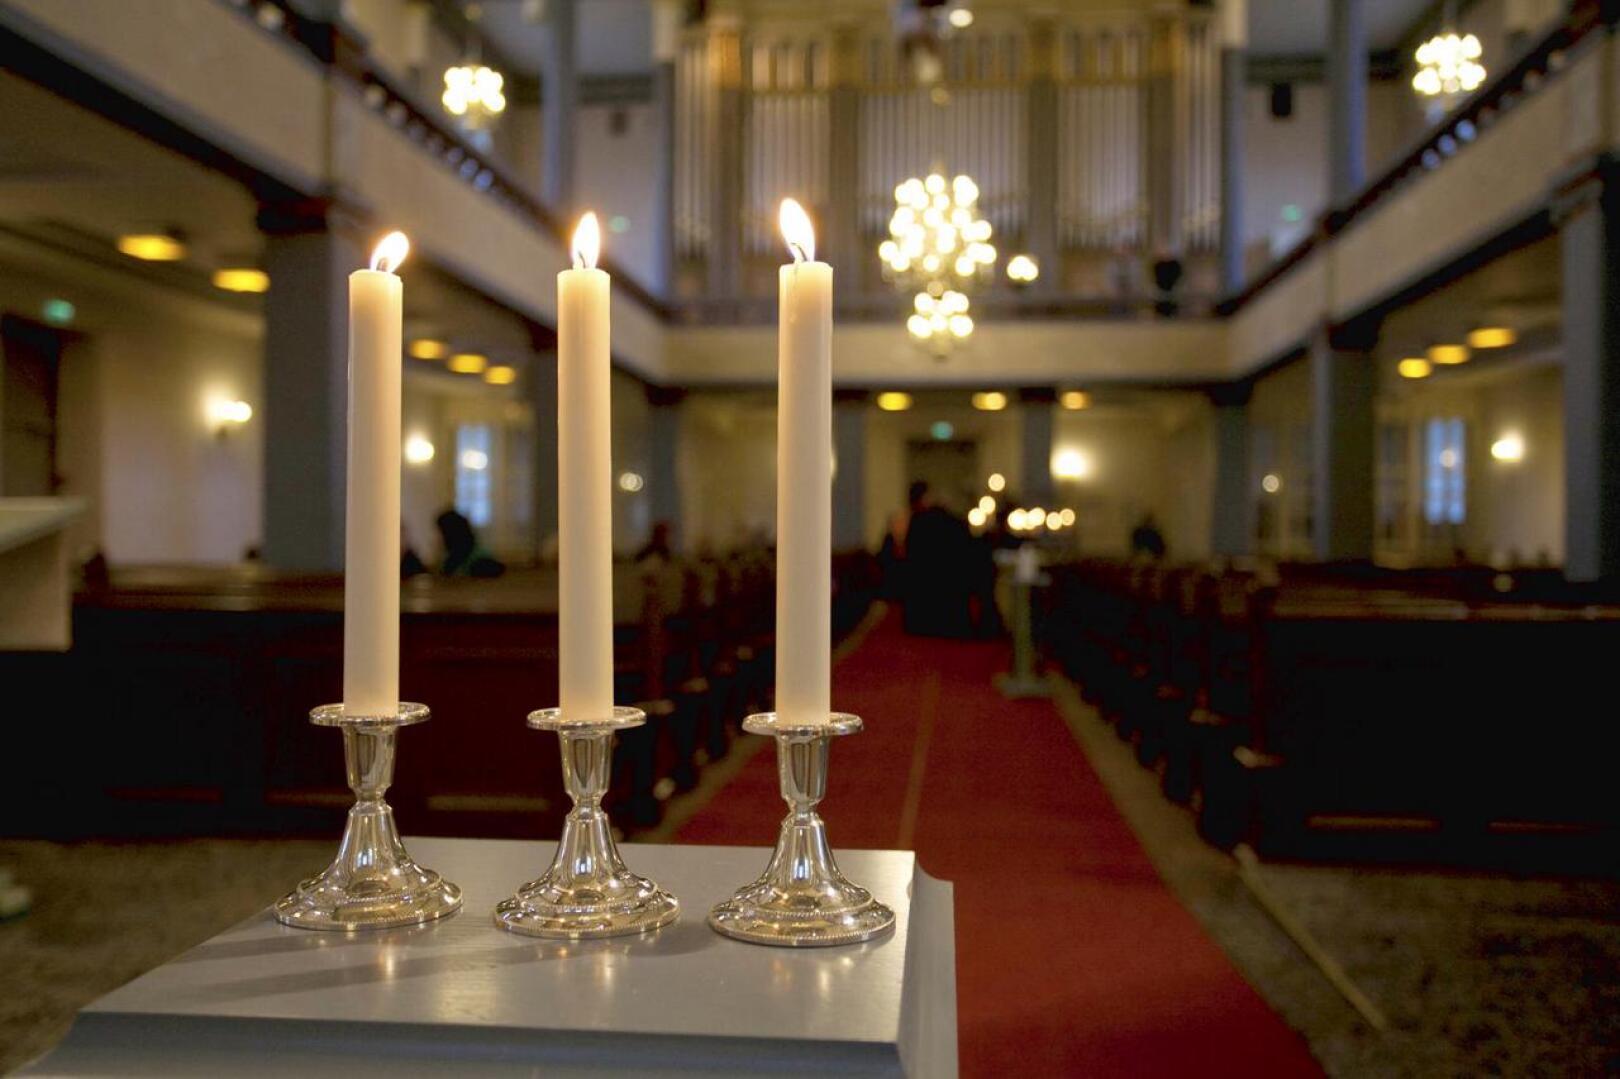 Kalajoen kirkossa sytytettiin kolme kynttilää uhrien muistoksi. 